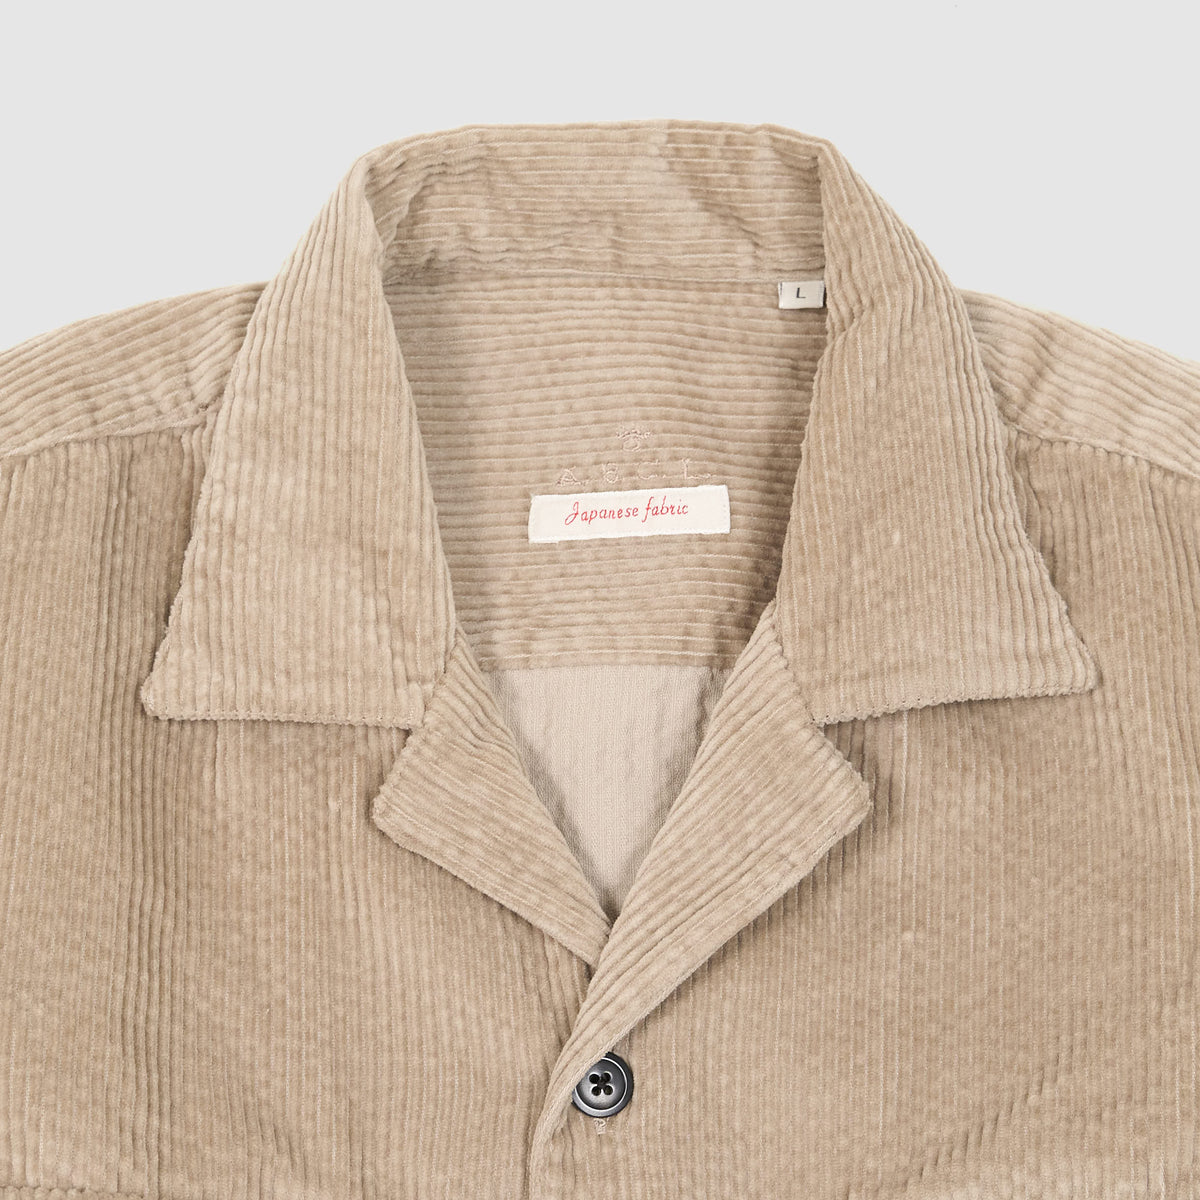 A.B.C.L Long Sleeve Corduroy Over Shirt